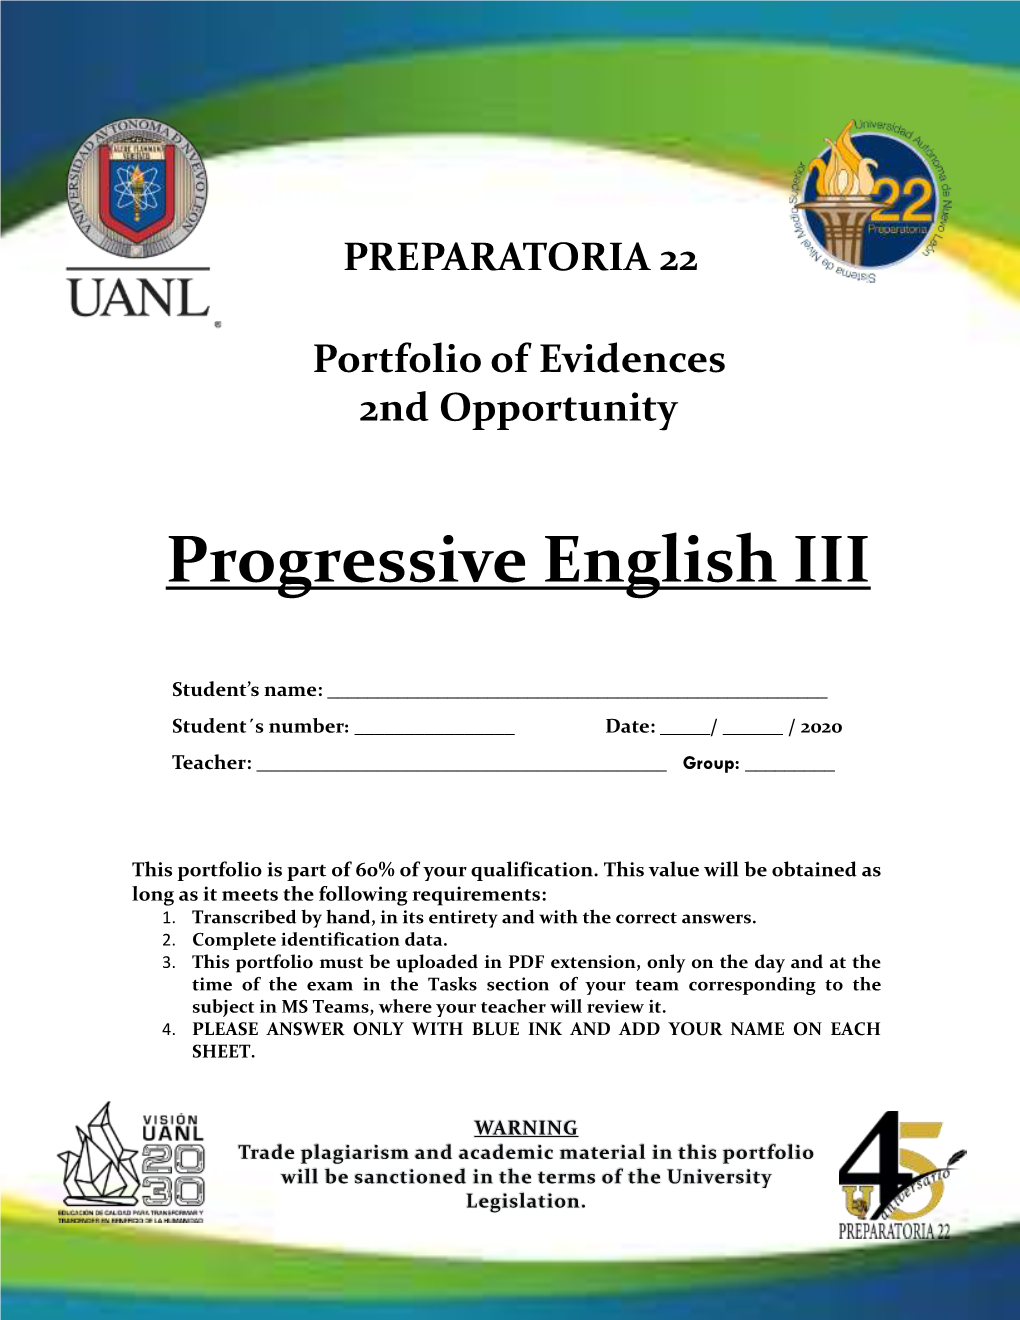 Progressive English III